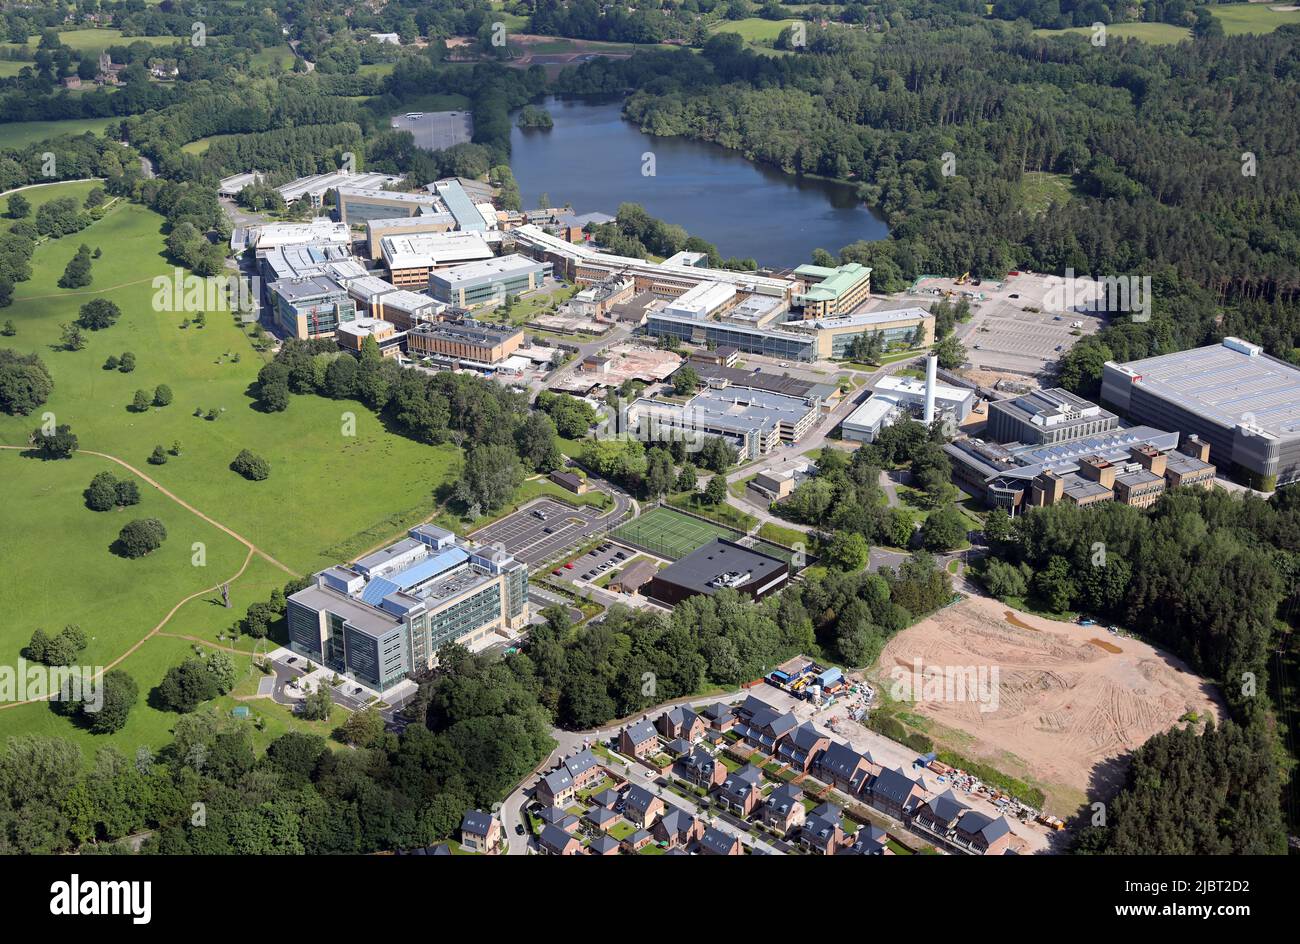 Luftaufnahme des Alderley Park, einem Technologiepark in Nether Alderley, Ceshire. Im Vorbereich befindet sich das Royal London House, ein Bürogebäude. Stockfoto